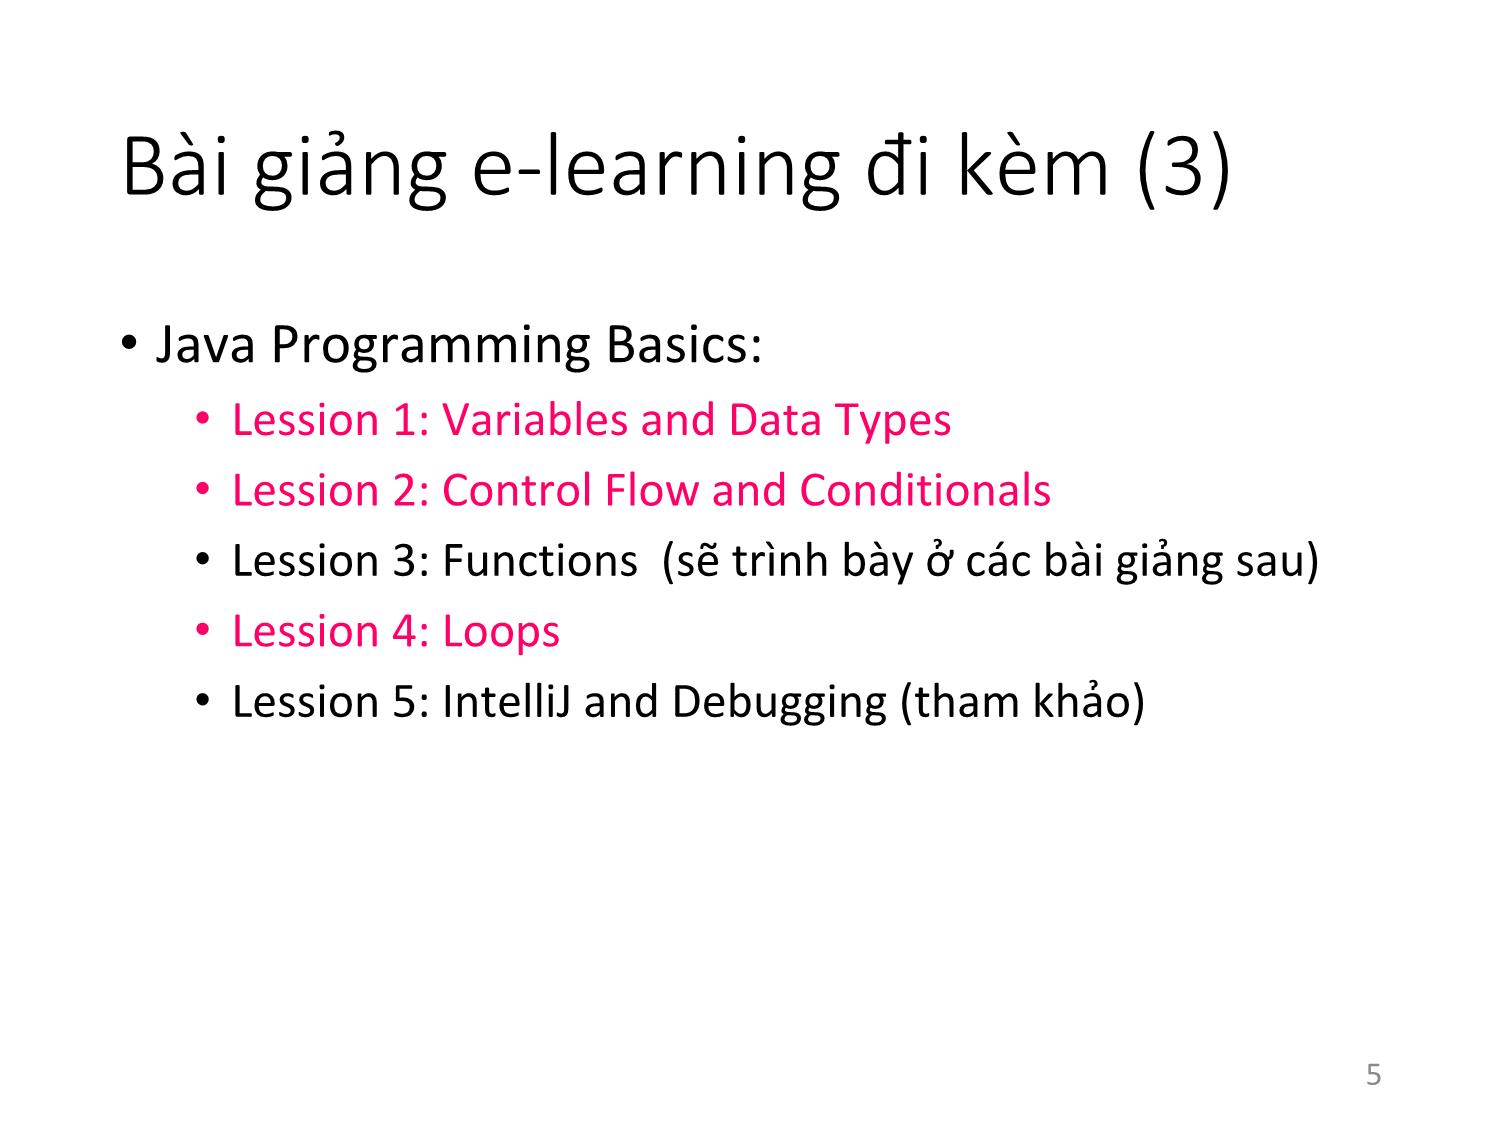 Bài giảng Lập trình hướng đối tượng - Bài 2: Cơ bản về Java và UML trang 5